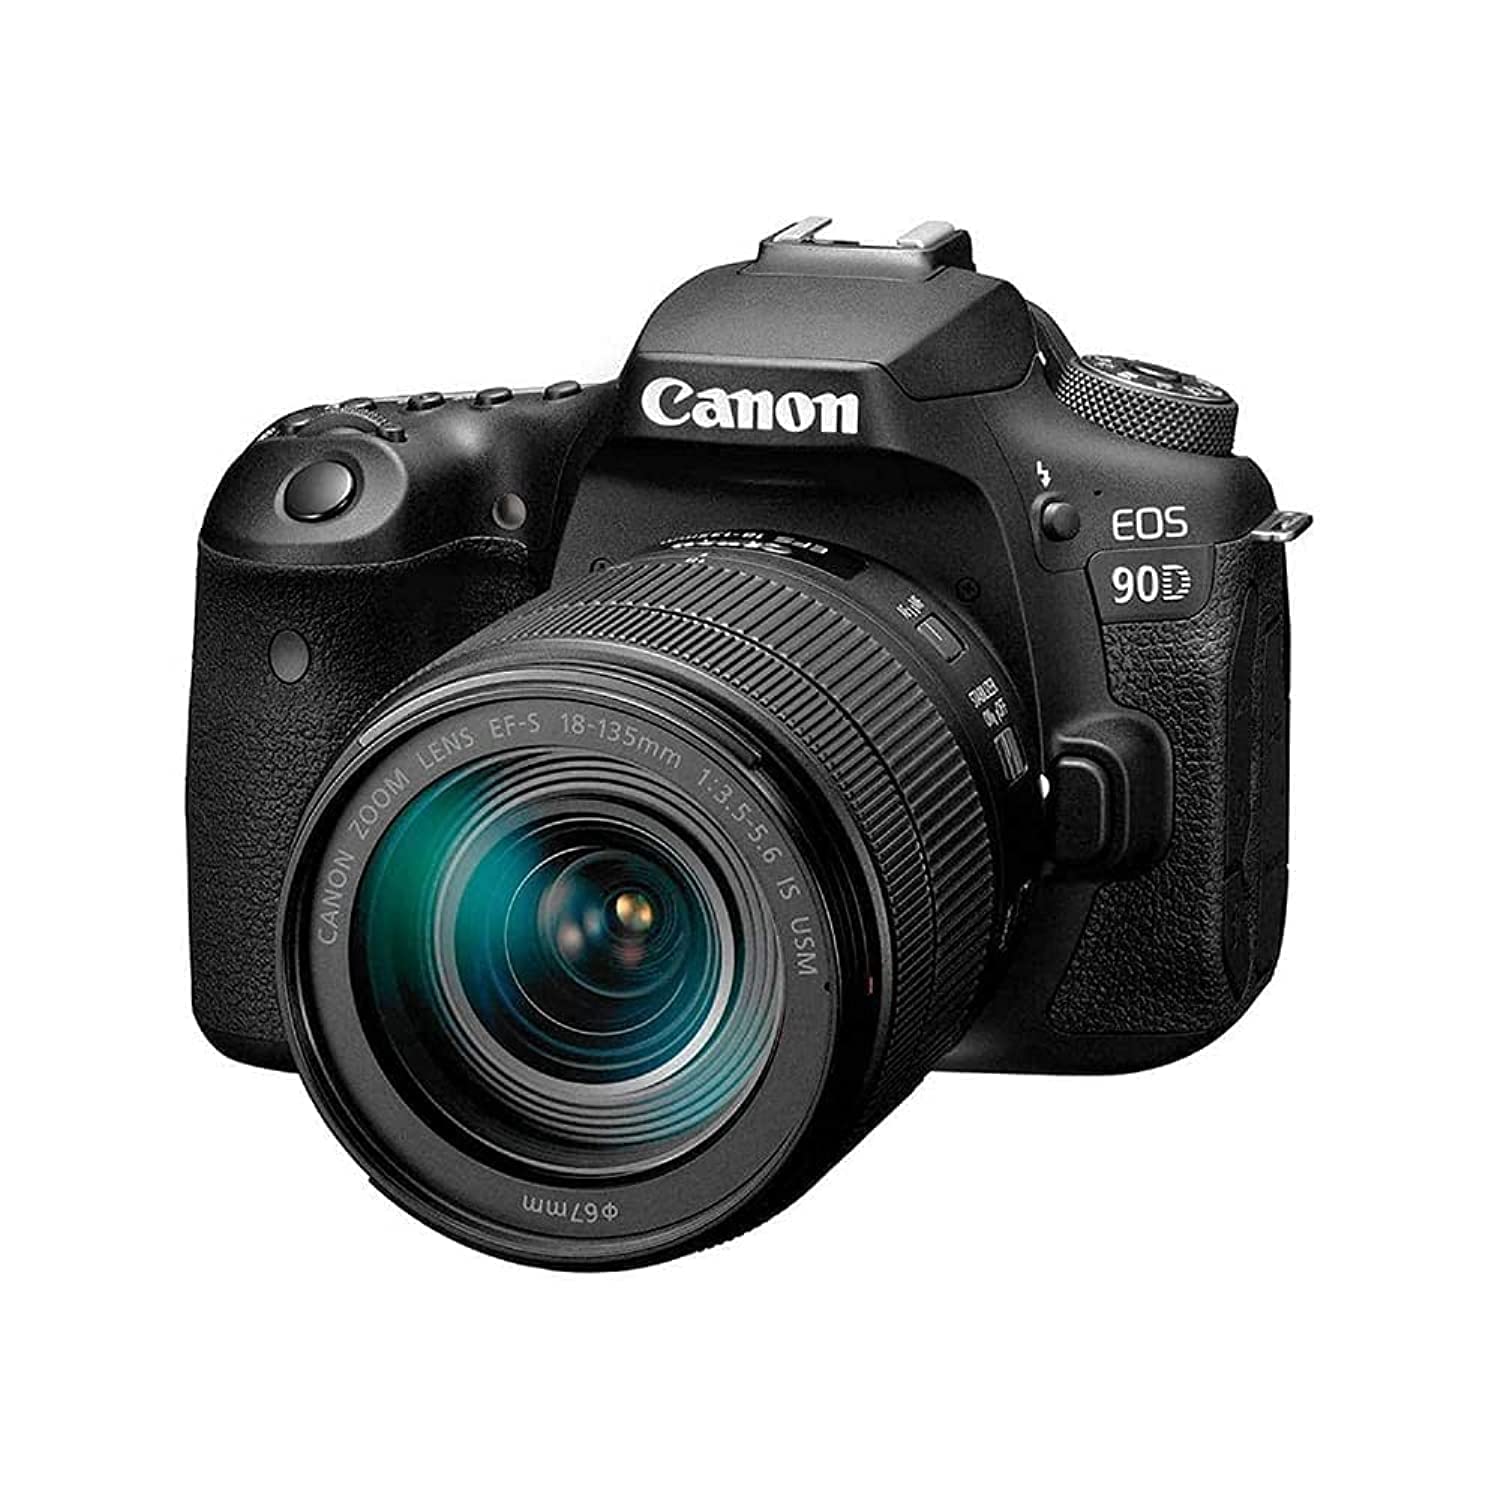 Canon 90Dデジタル一眼レフカメラ